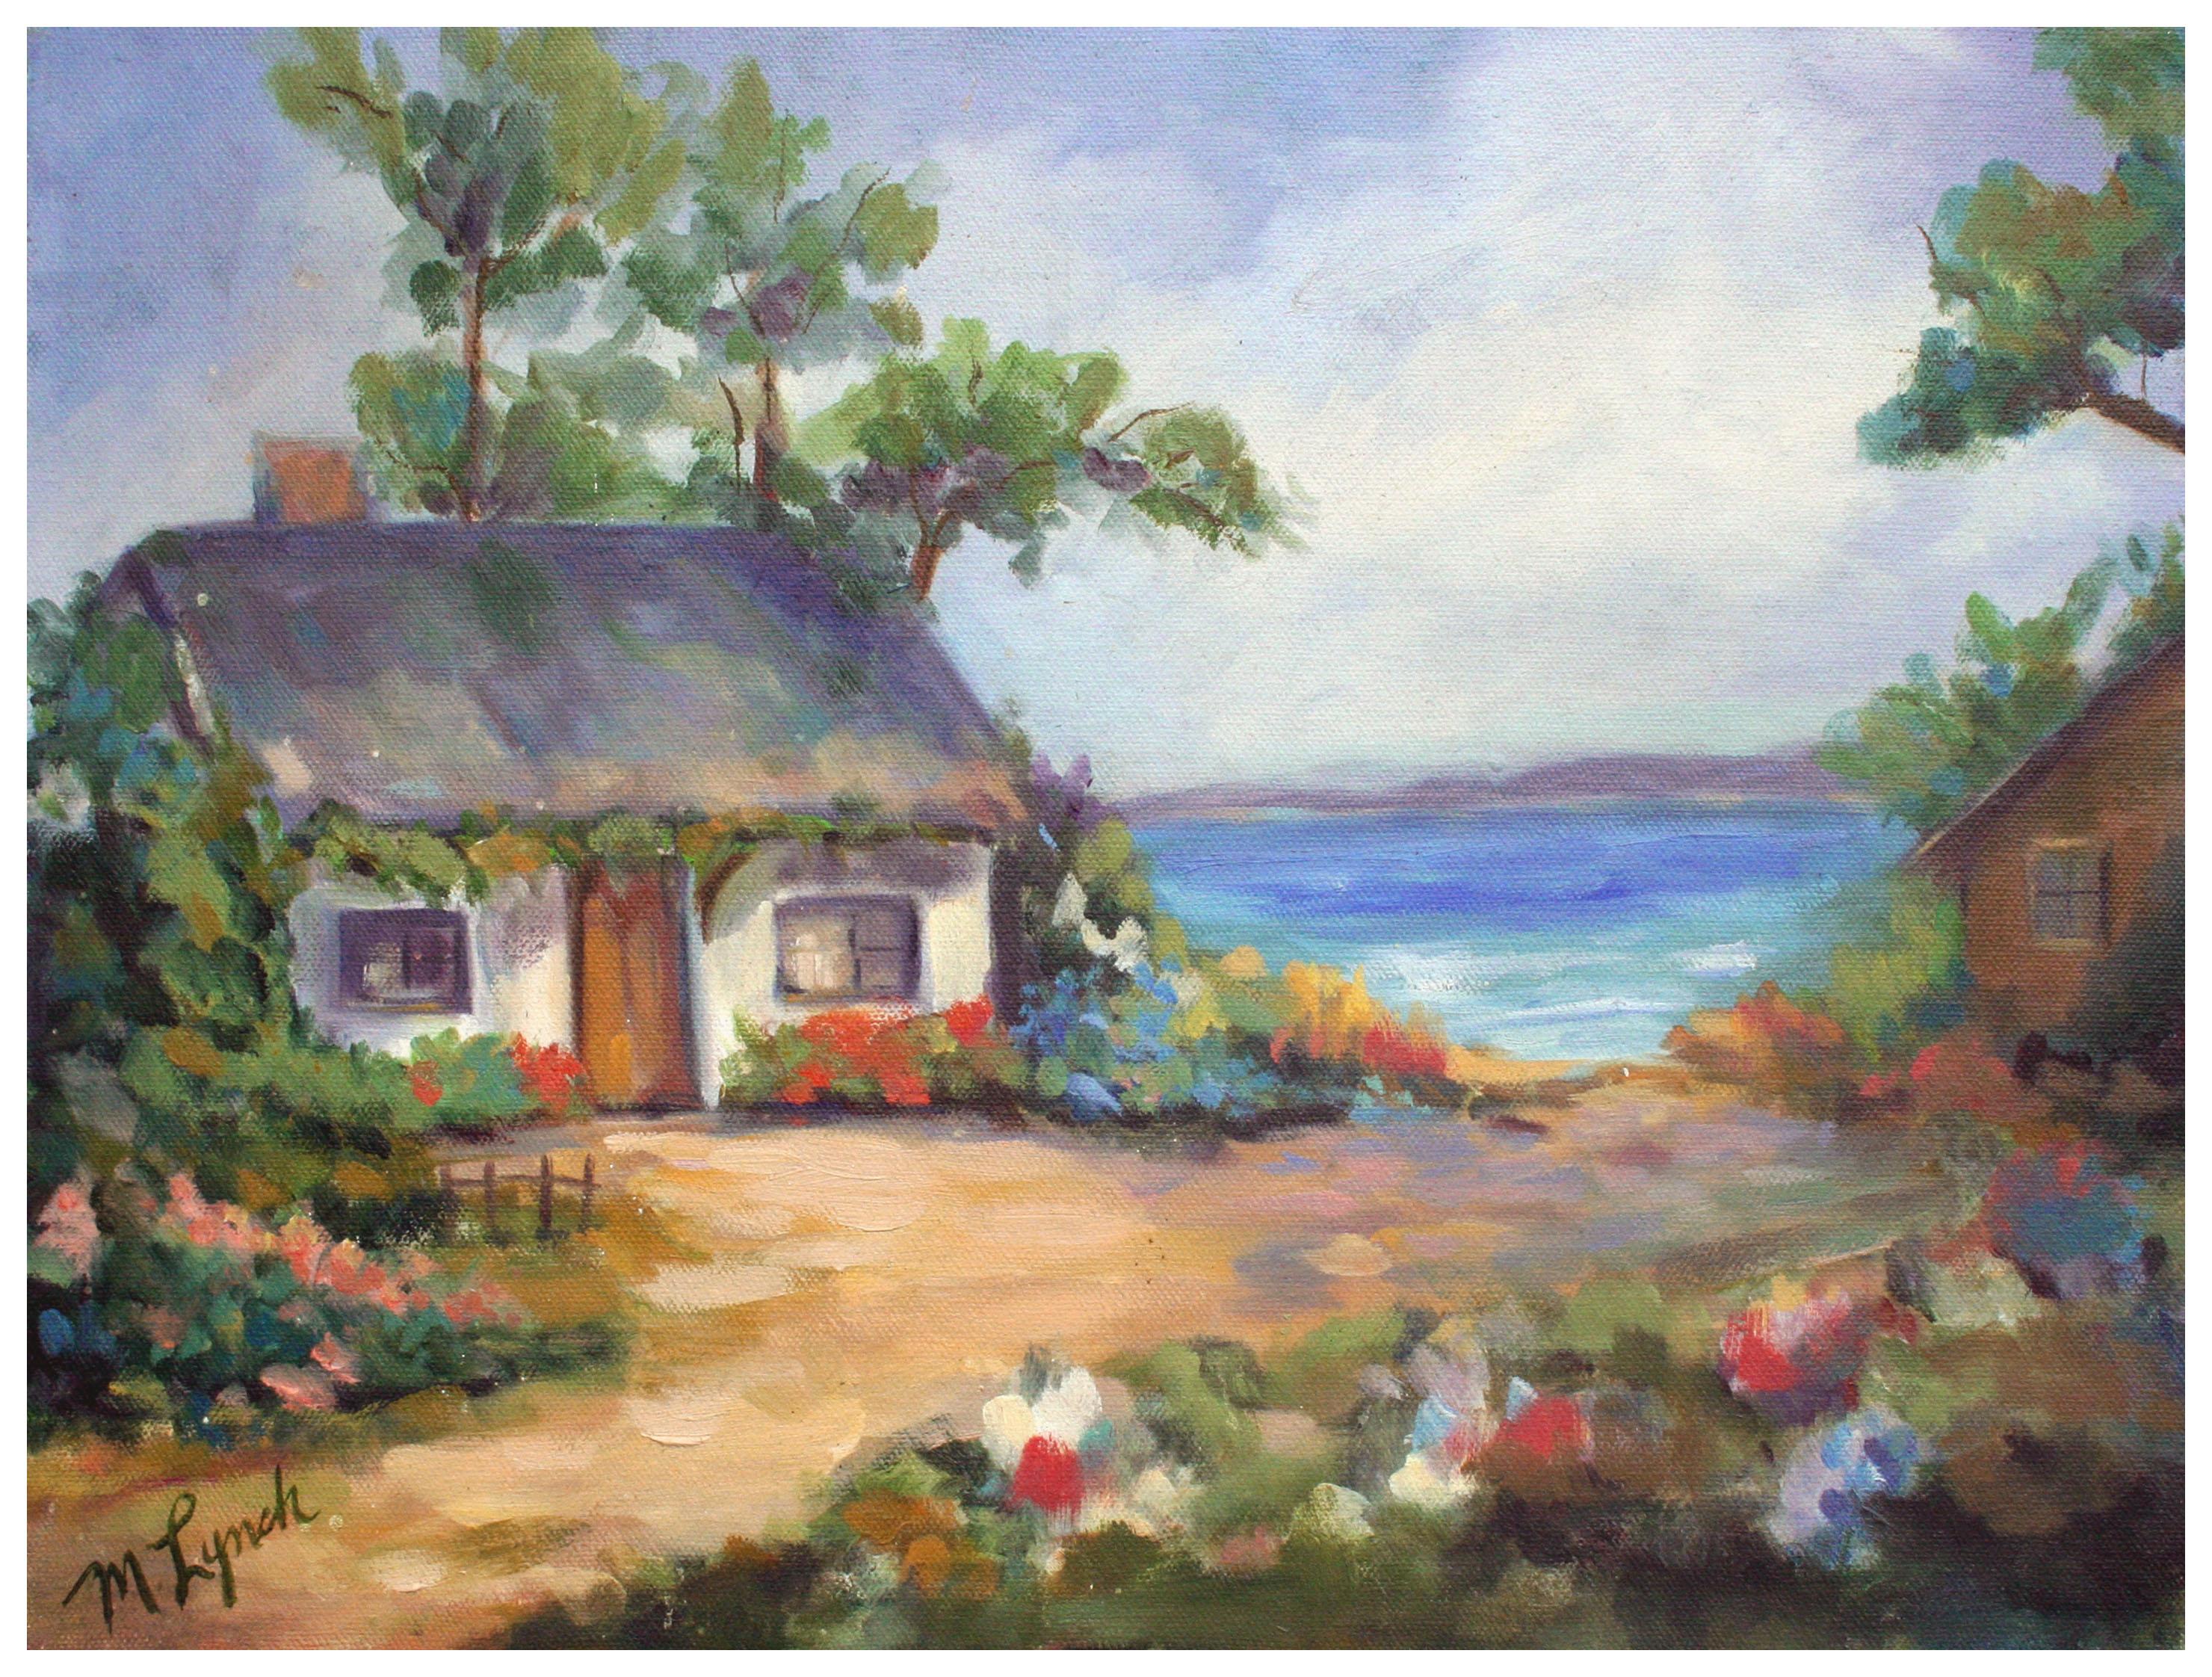 M. Lynch Landscape Painting - Pacific Grove Beach Cottage Garden Landscape